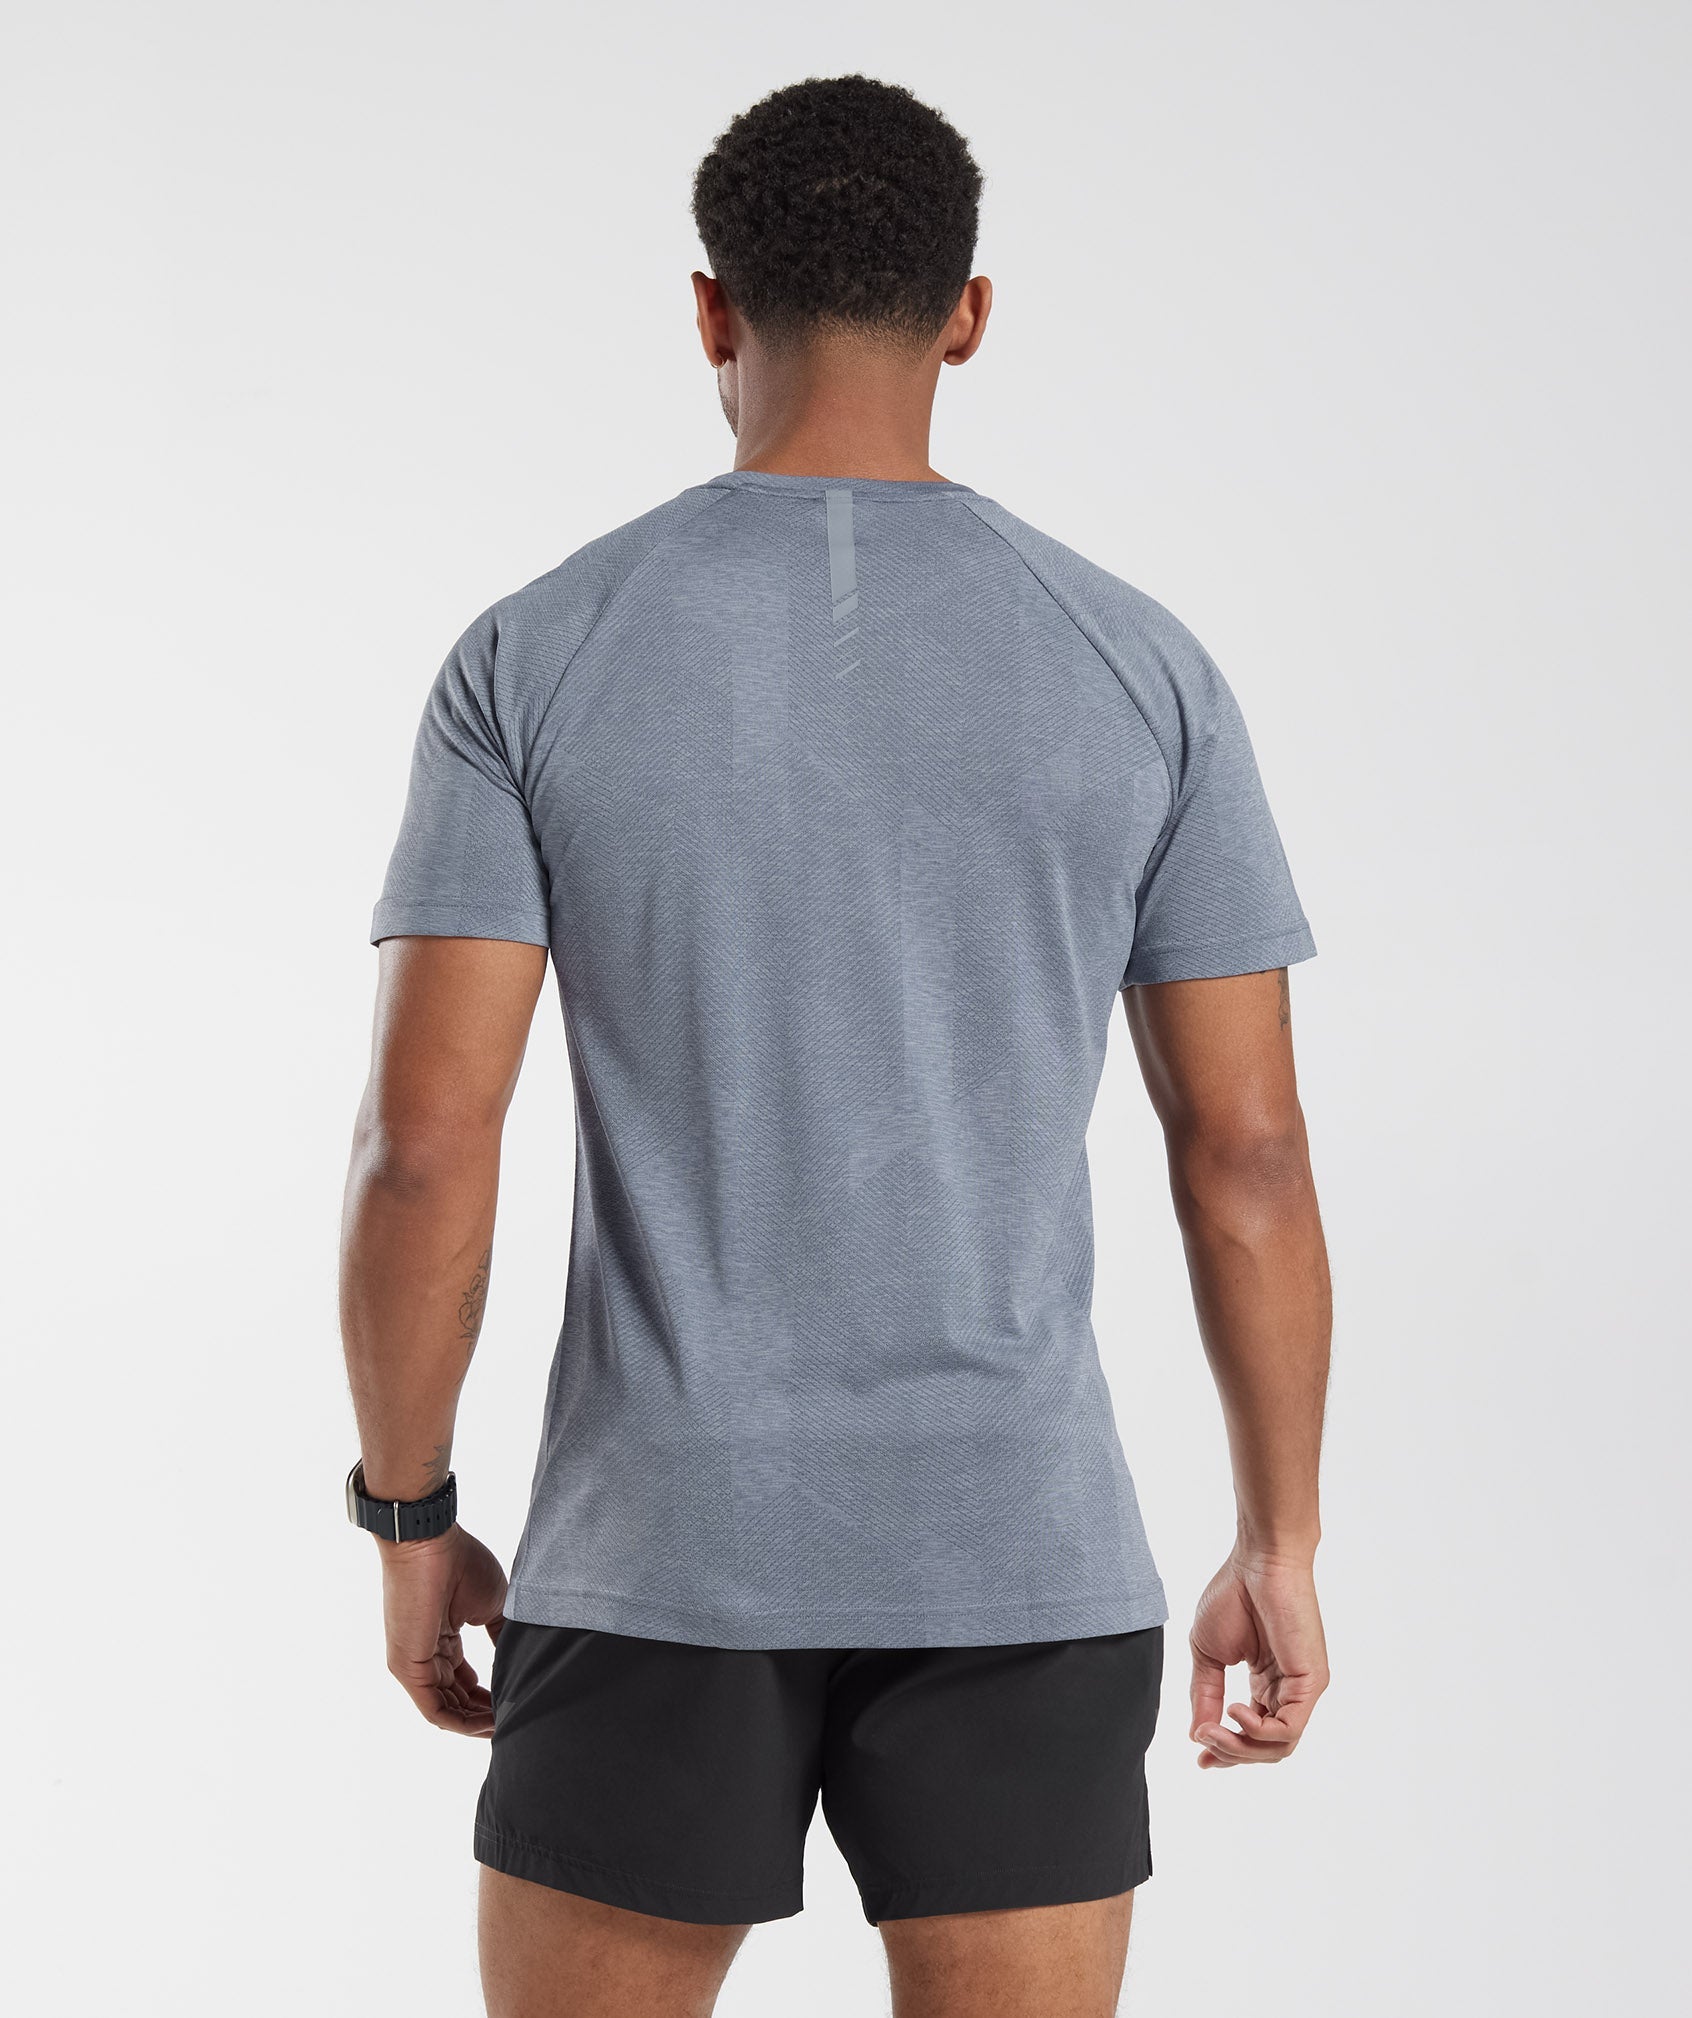 Apex T-Shirt in Evening Blue/Drift Grey - view 2